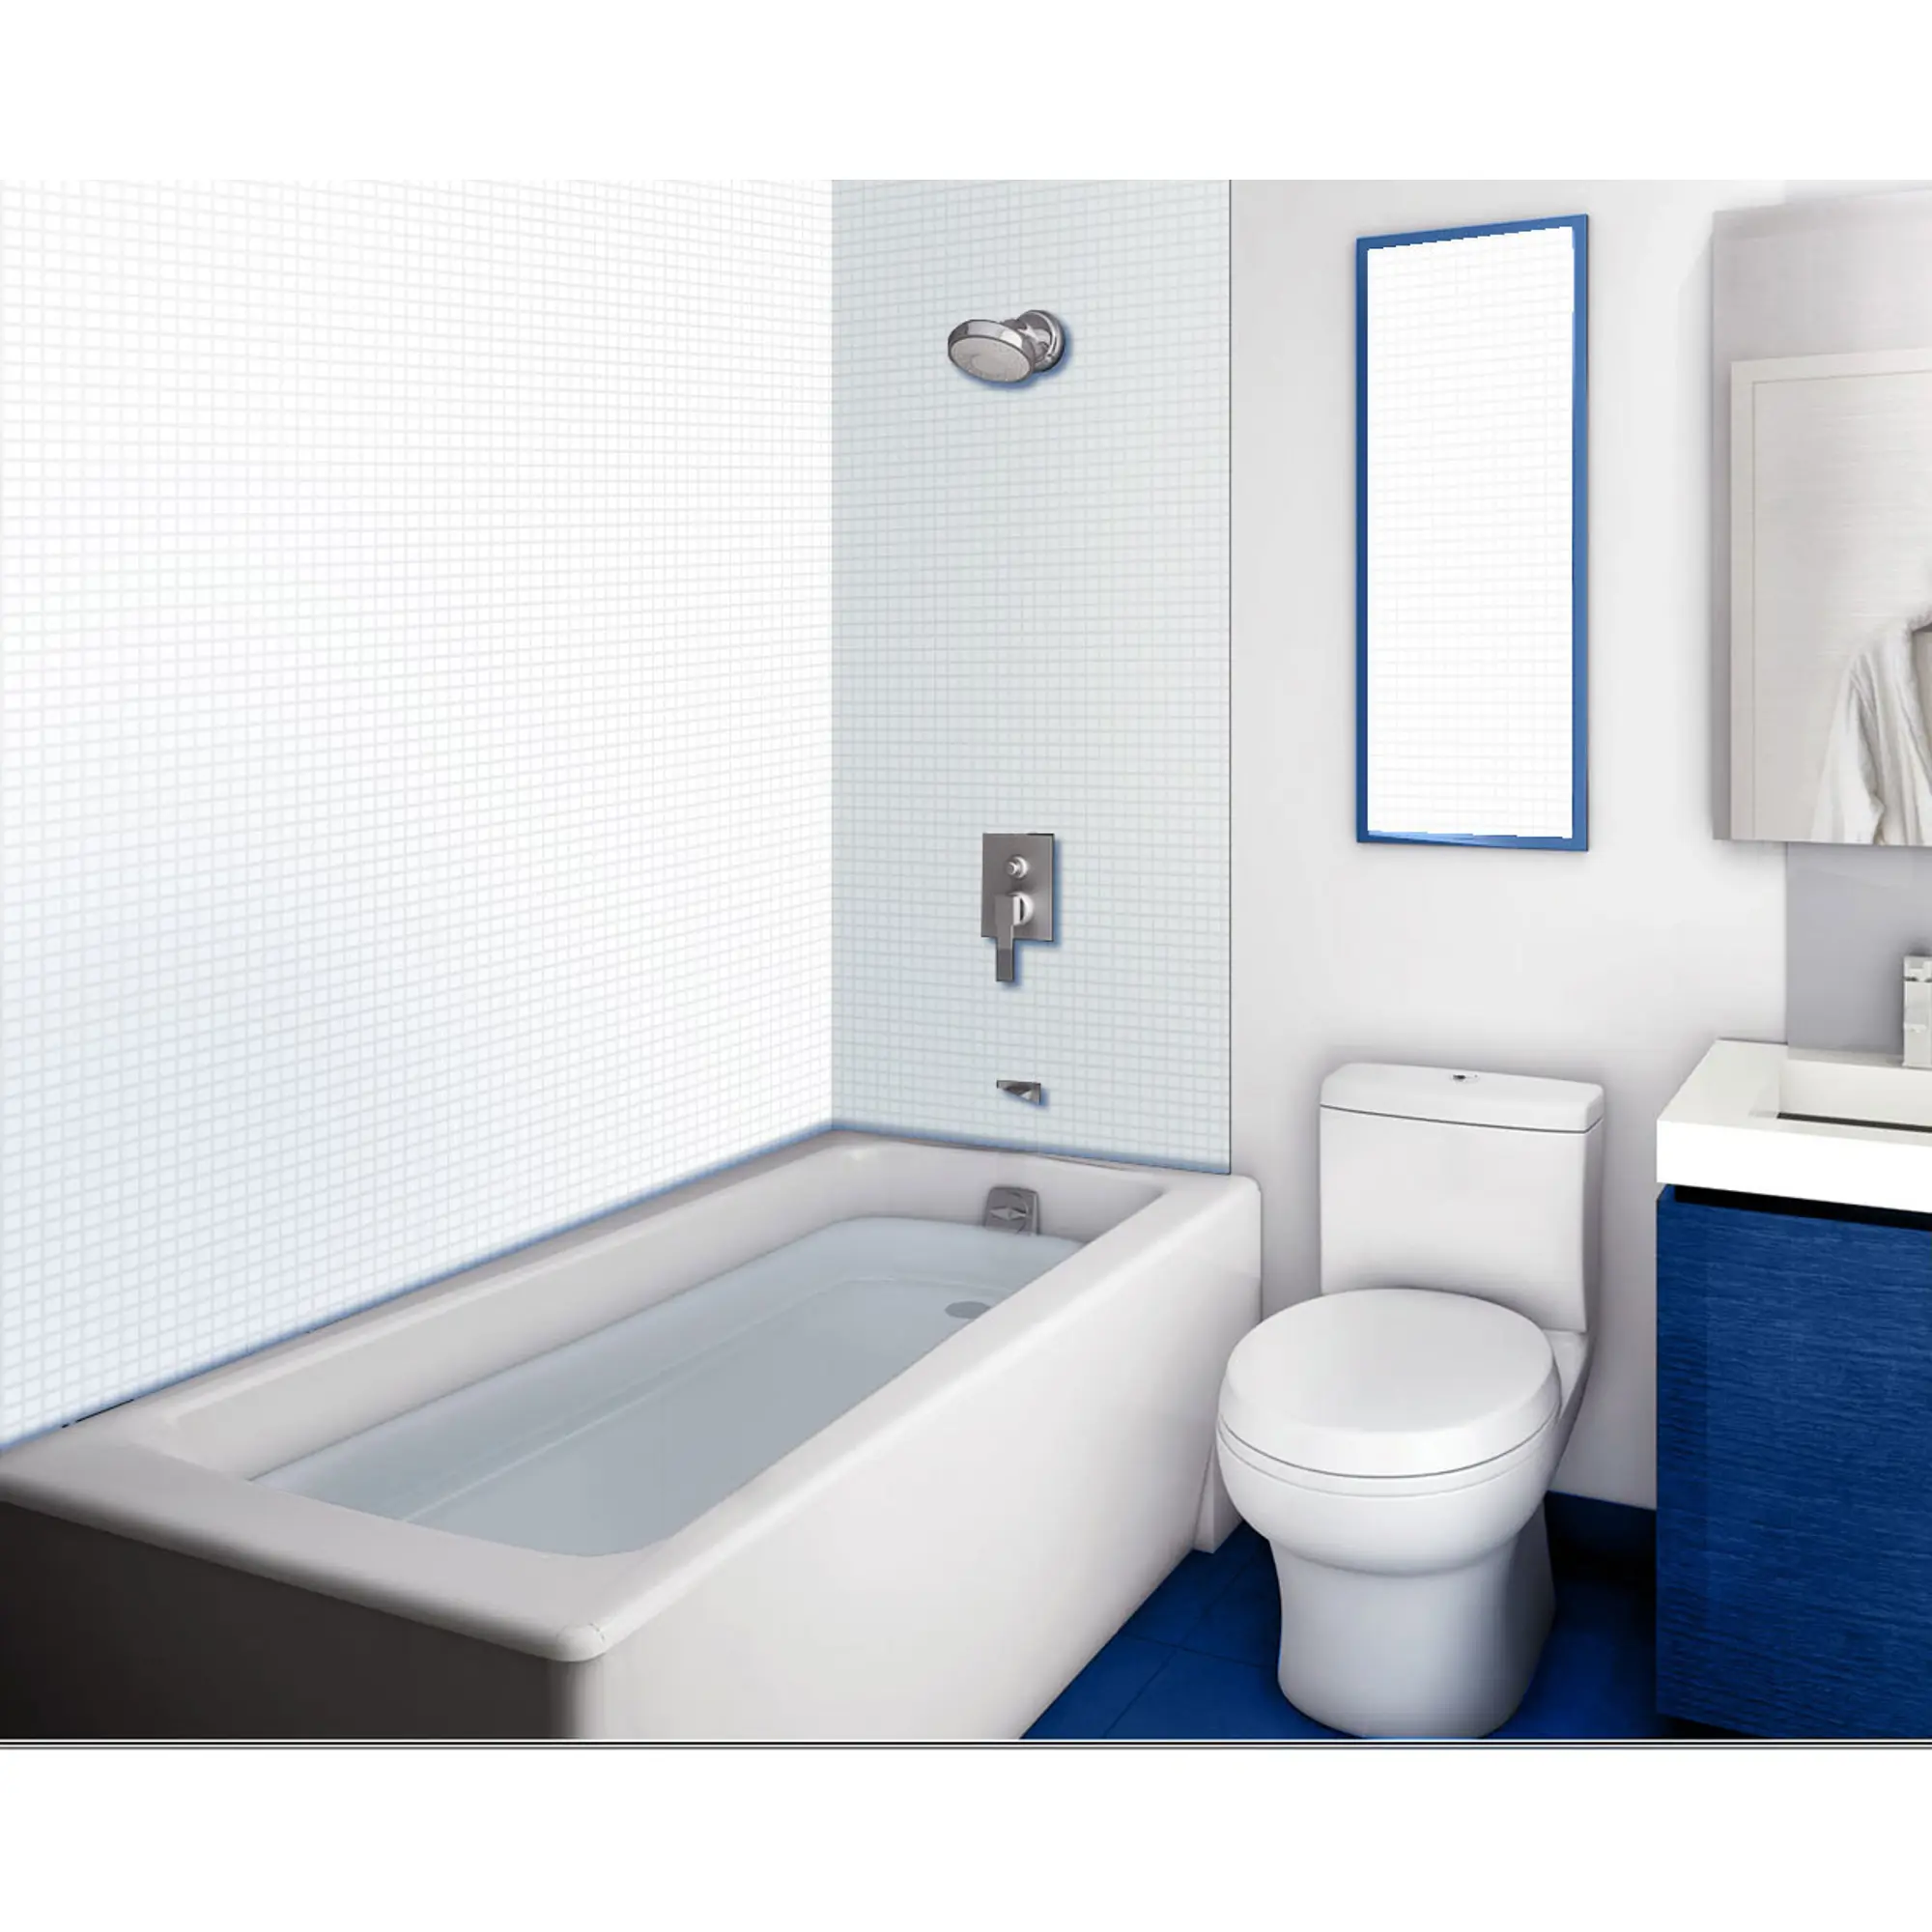 Панели в ванной отзывы. Панель ПВХ листовая 0.3 мм 960х485 мм мозаика белая 0.47 м². ПВХ для ванной комнаты. Панели для ванной. Ванная пластиковыми панелями.